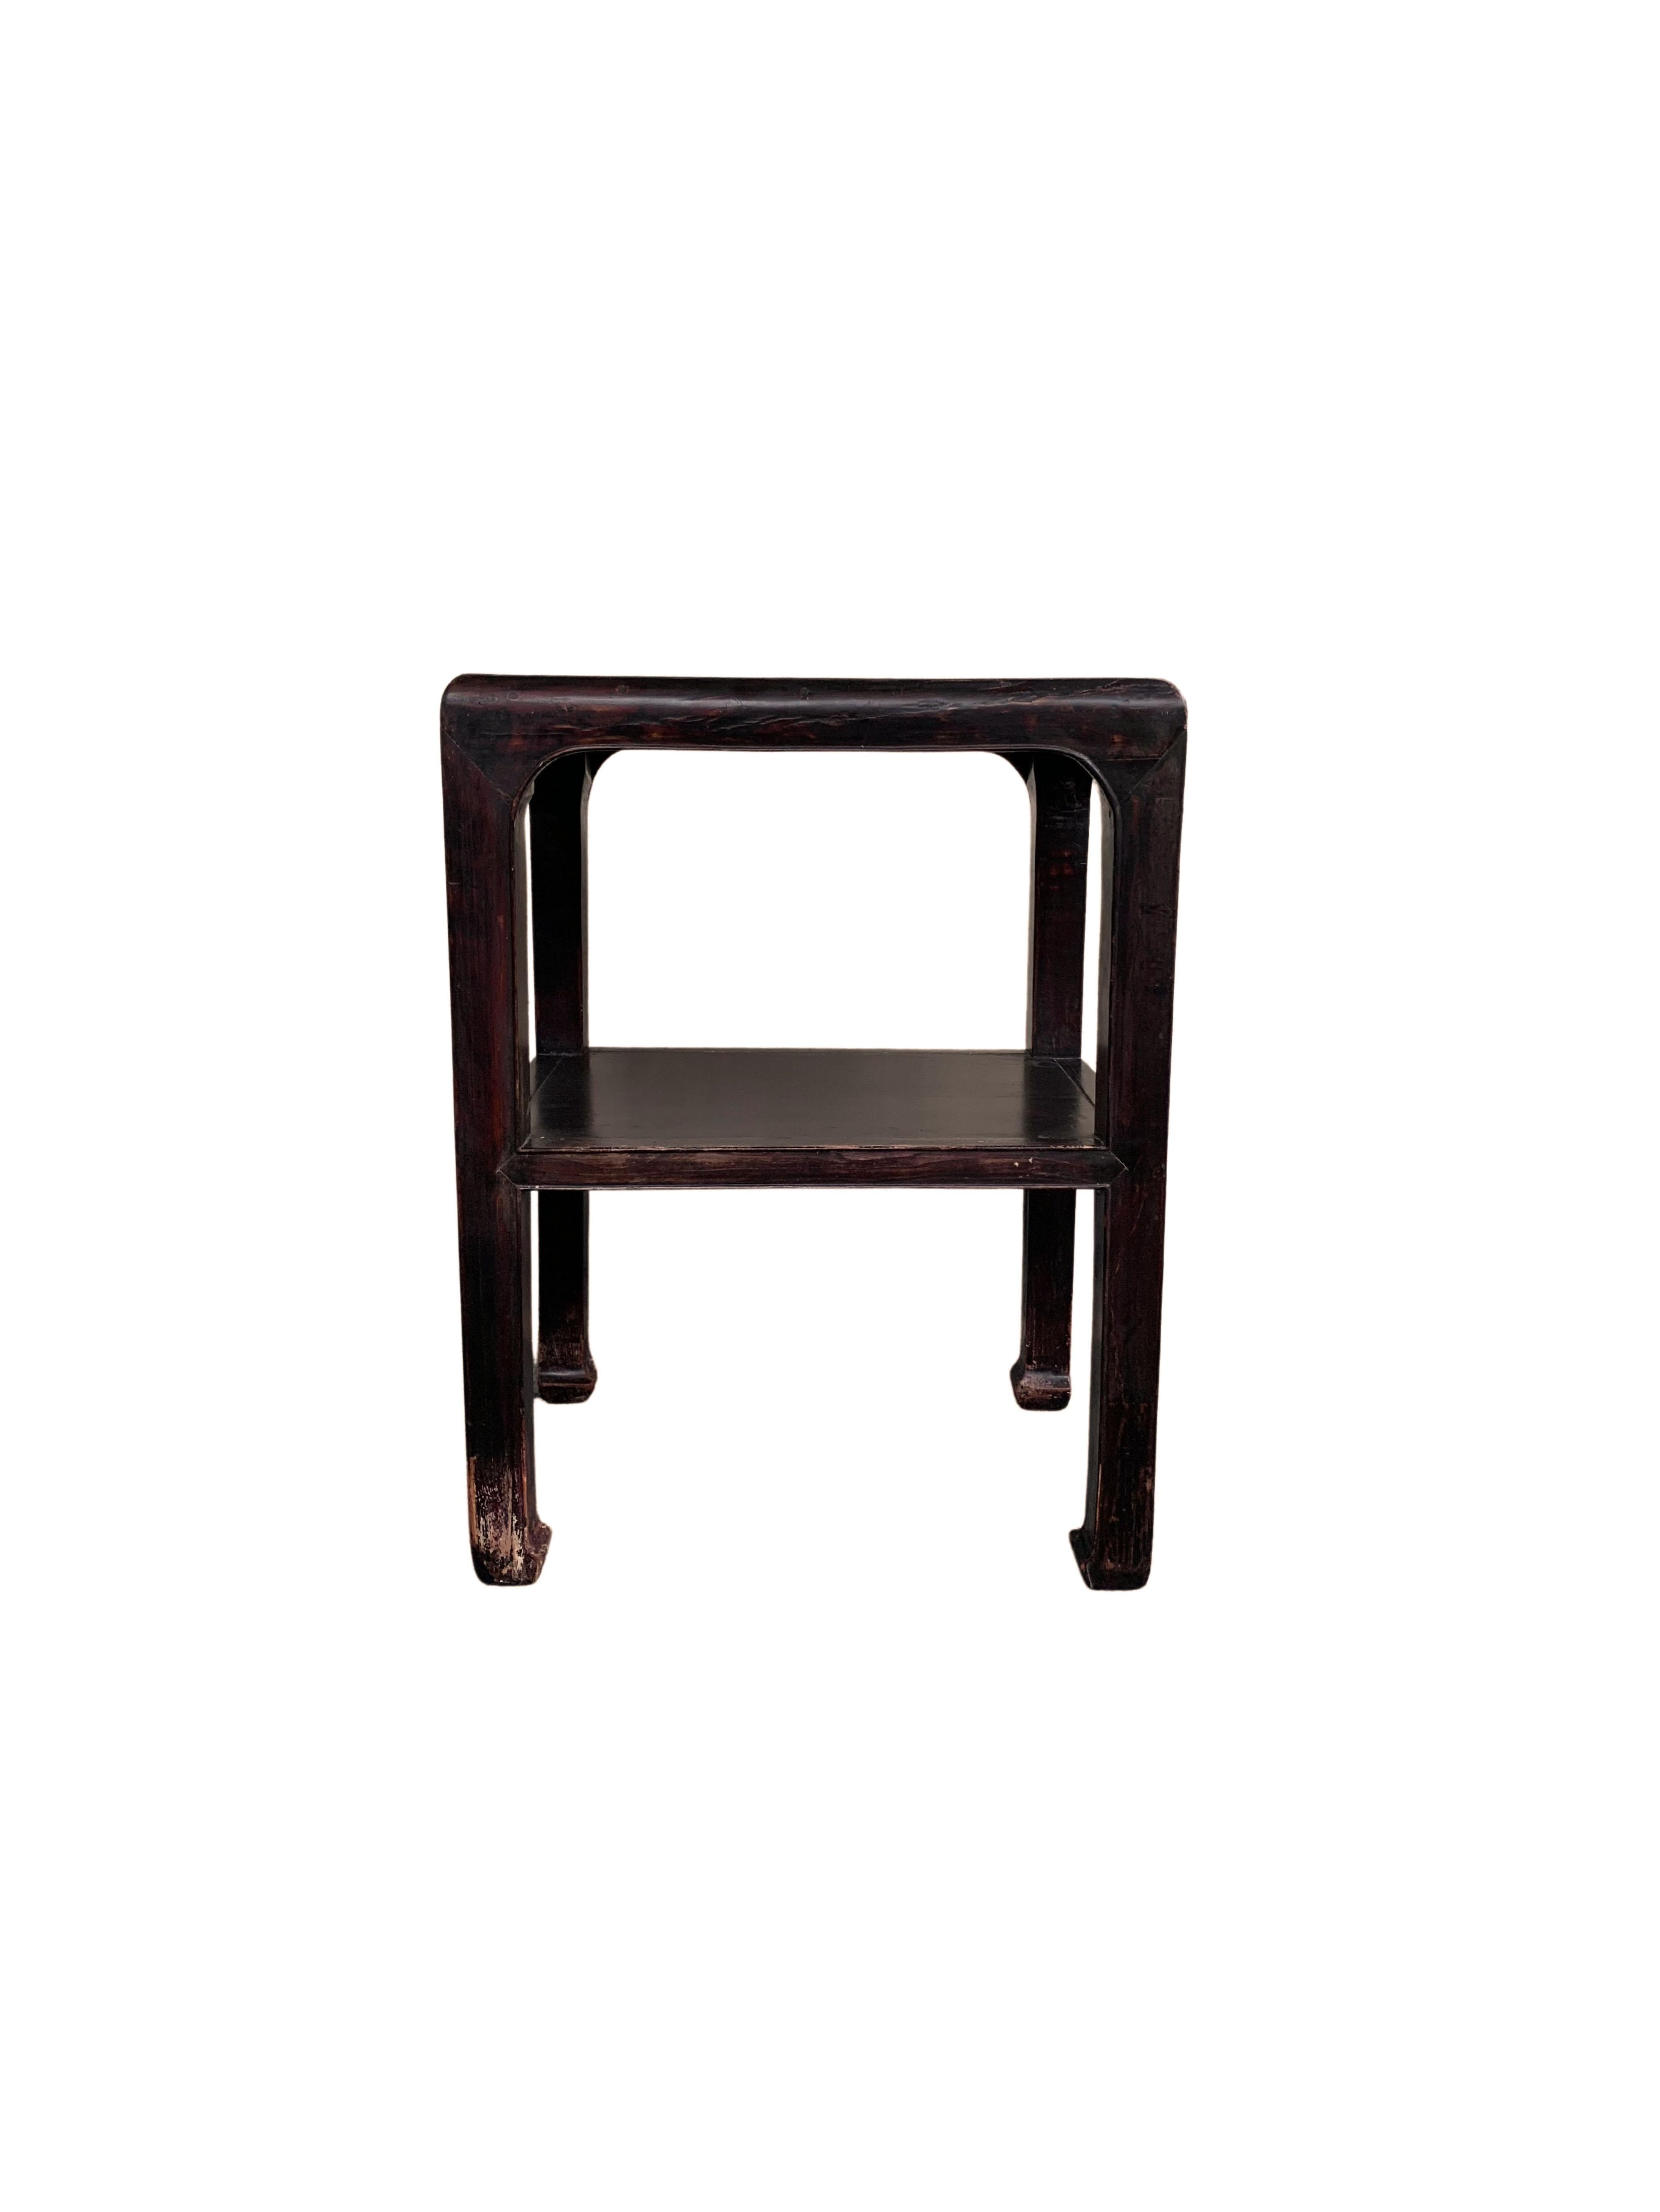 Cette élégante table laquée a été fabriquée en Chine du Nord au milieu du XXe siècle. Il présente des pieds élégants, joliment proportionnés et aux extrémités incurvées. Il comporte une étagère inférieure et un plateau carré. Le bois a